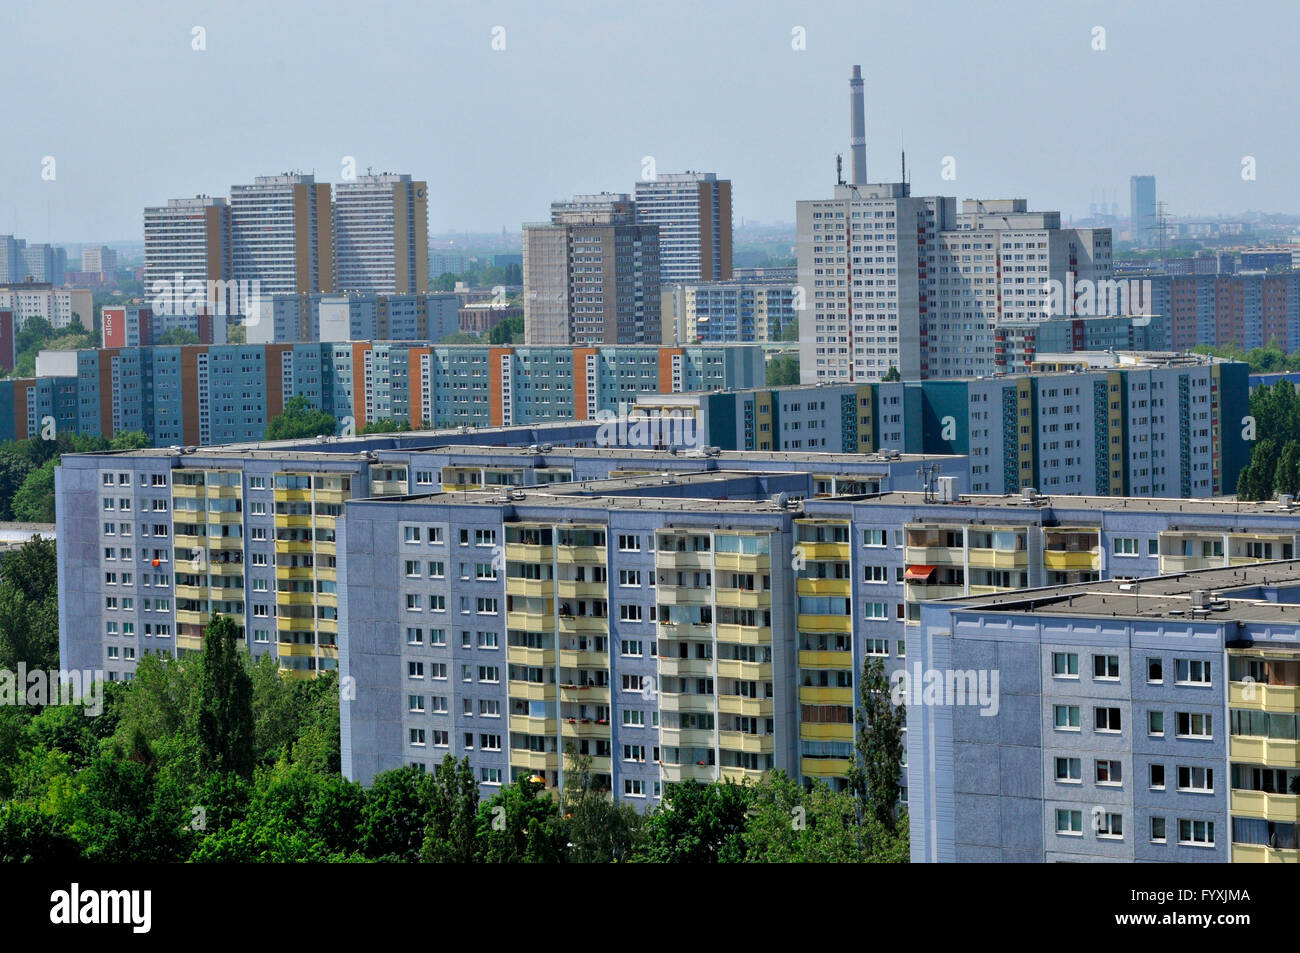 Housing estate, Allee der Kosmonauten, Marzahn, Berlin, Germany Stock Photo